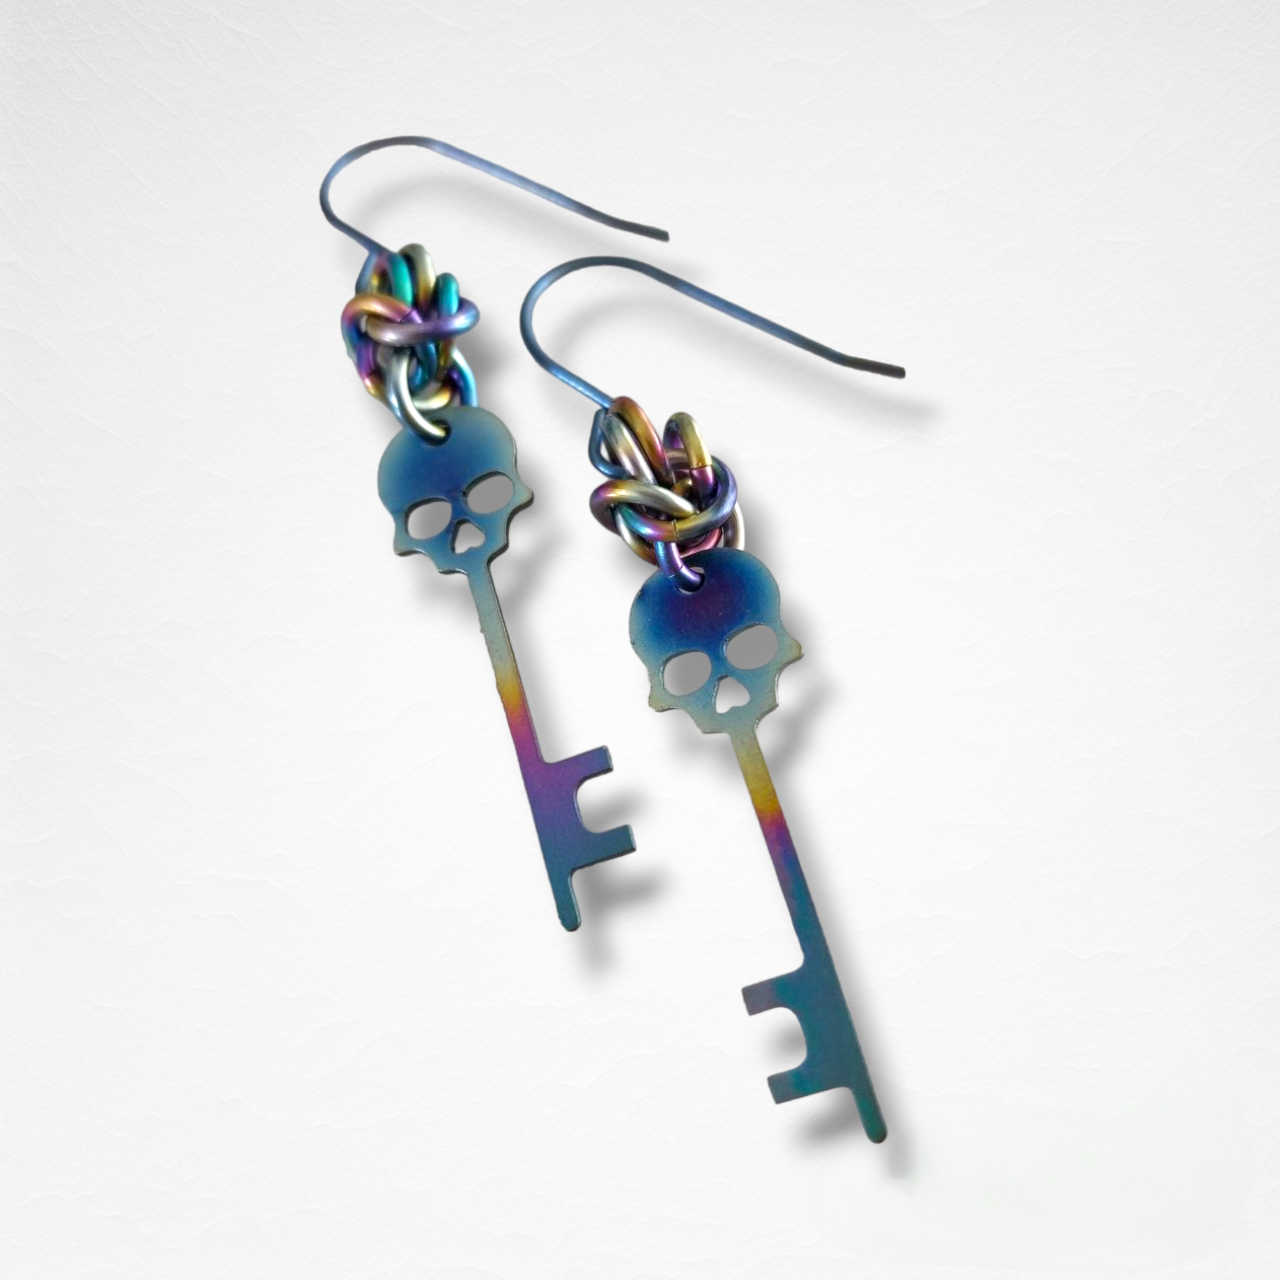 Only 2 Left! - Titanium Skeleton Key Earrings